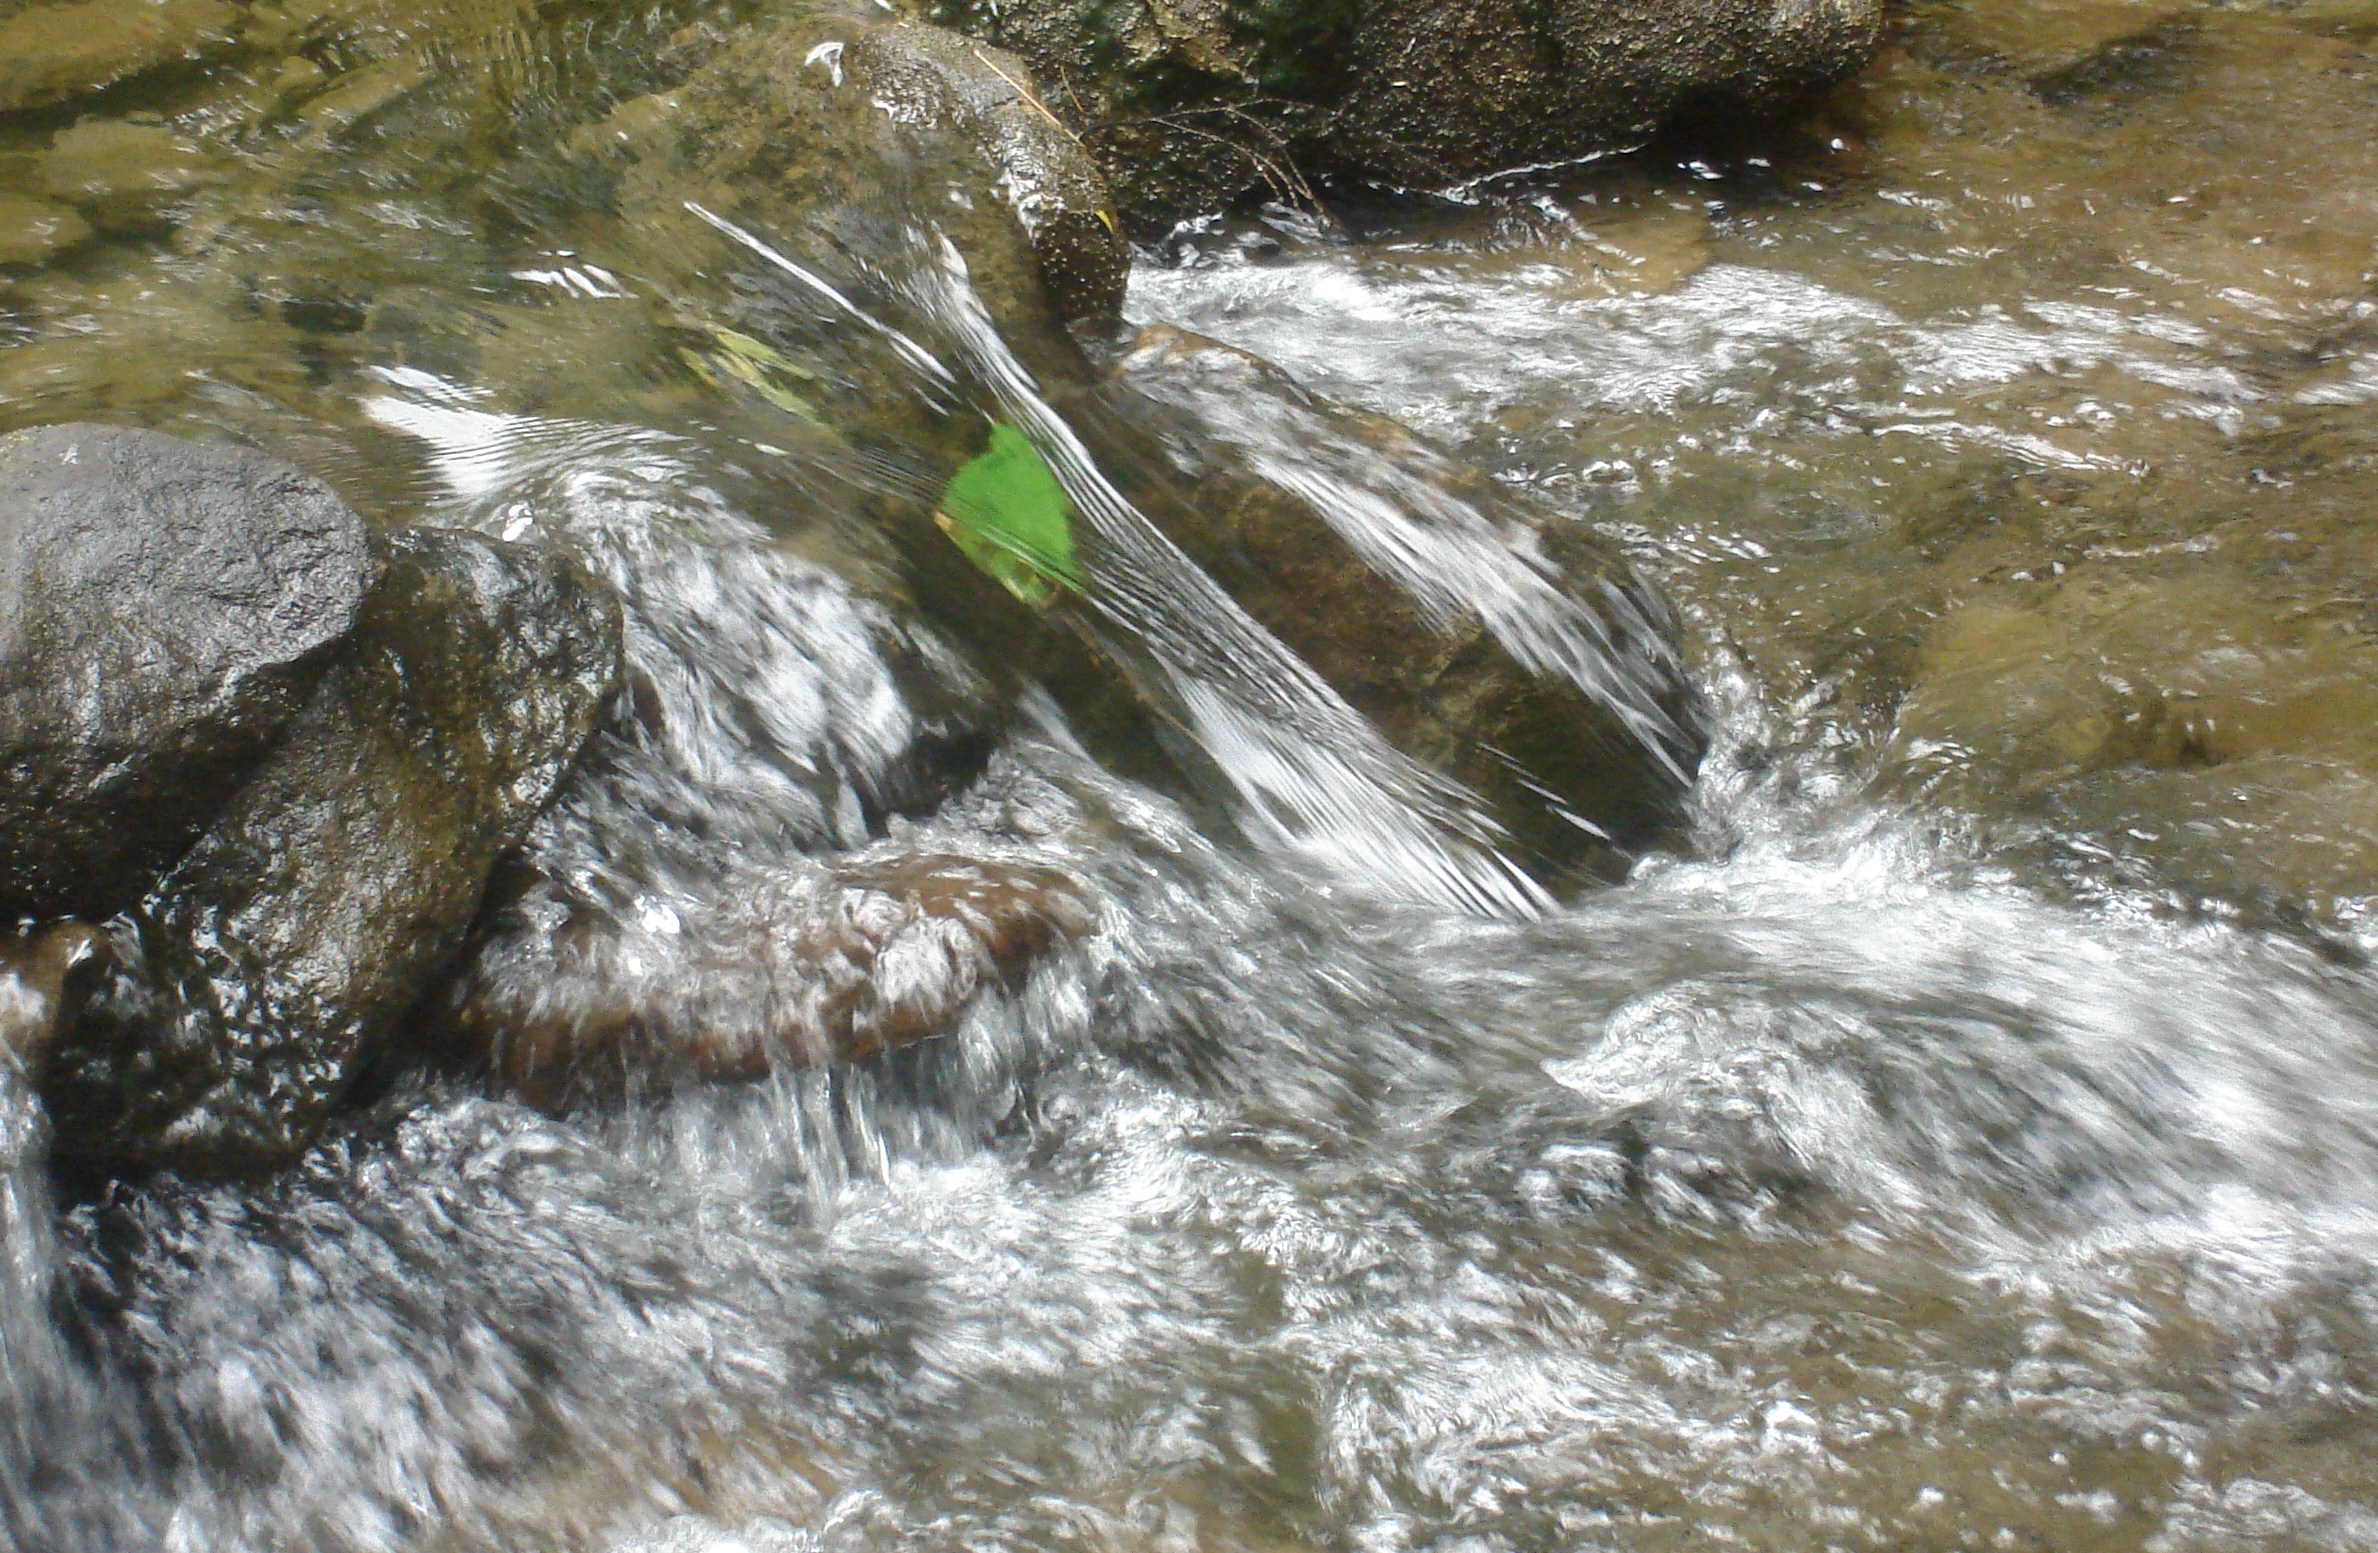 Leaf caught in stream